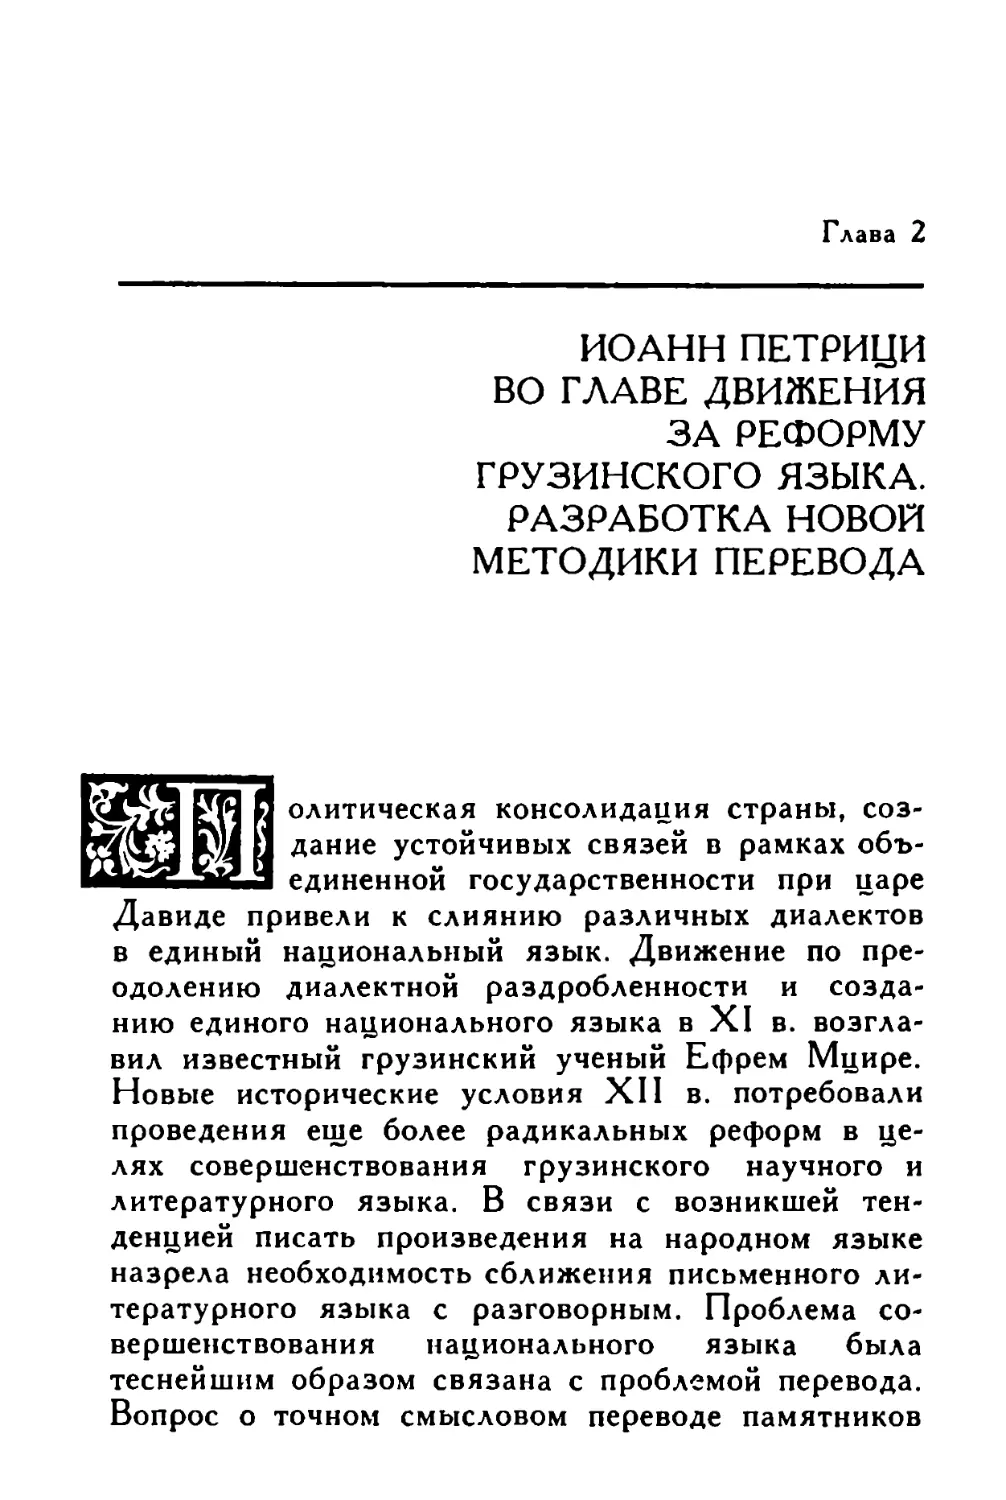 Глава 2. Иоанн Петрици во главе движения за реформу грузинского языка. Разработка новой методики перевода